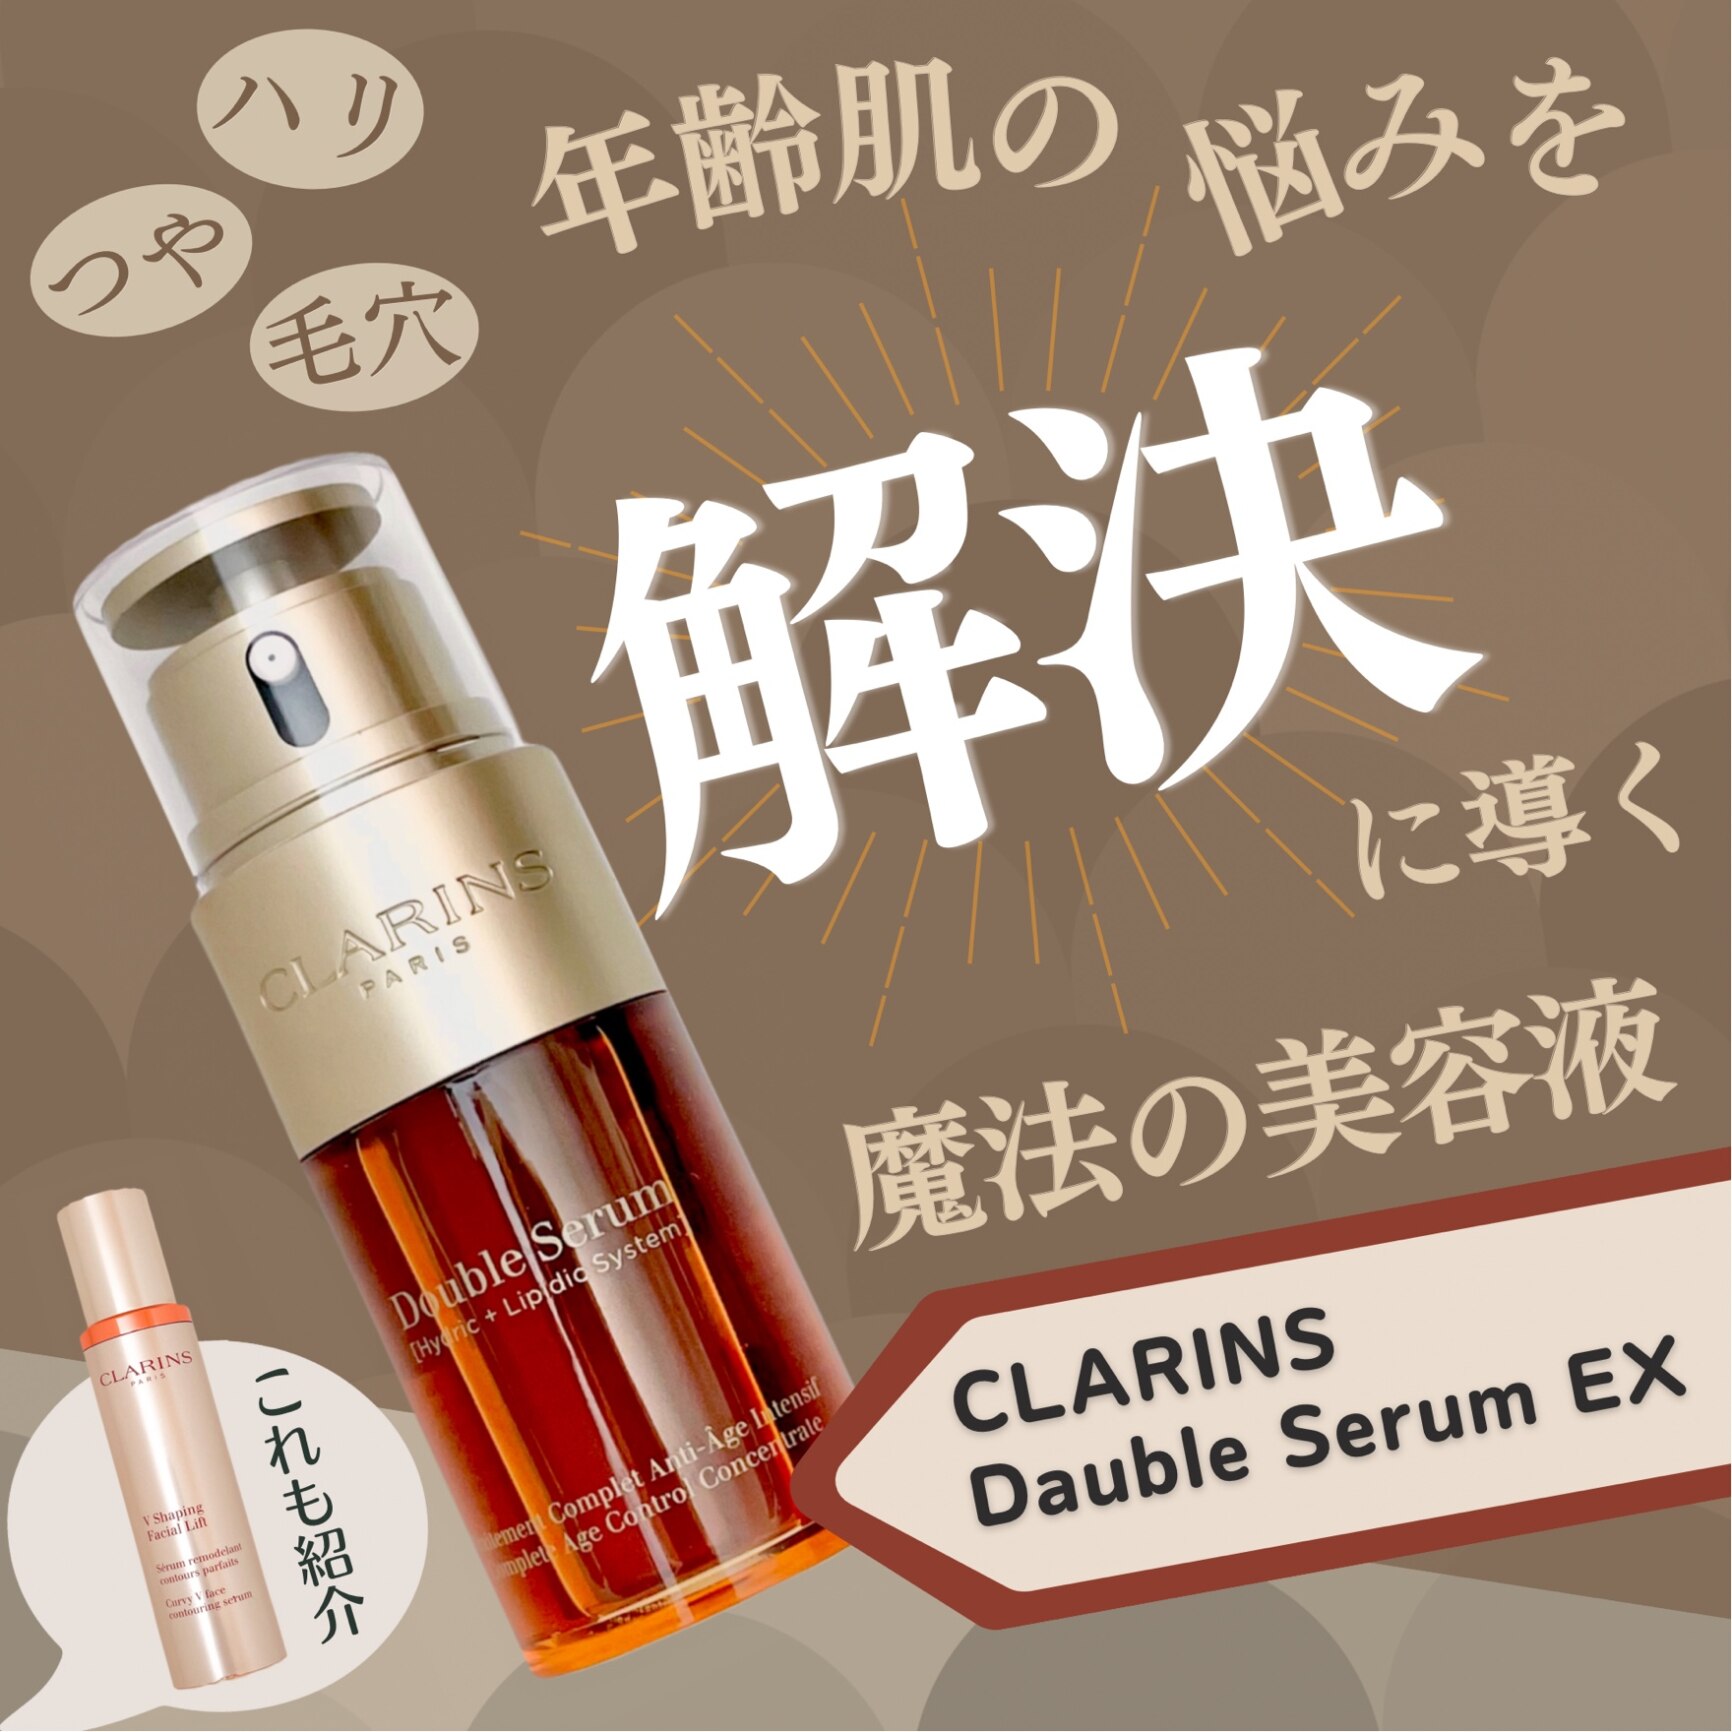 クラランス ダブル セーラム EX 30ml 並行輸入品 clarins【ダブル